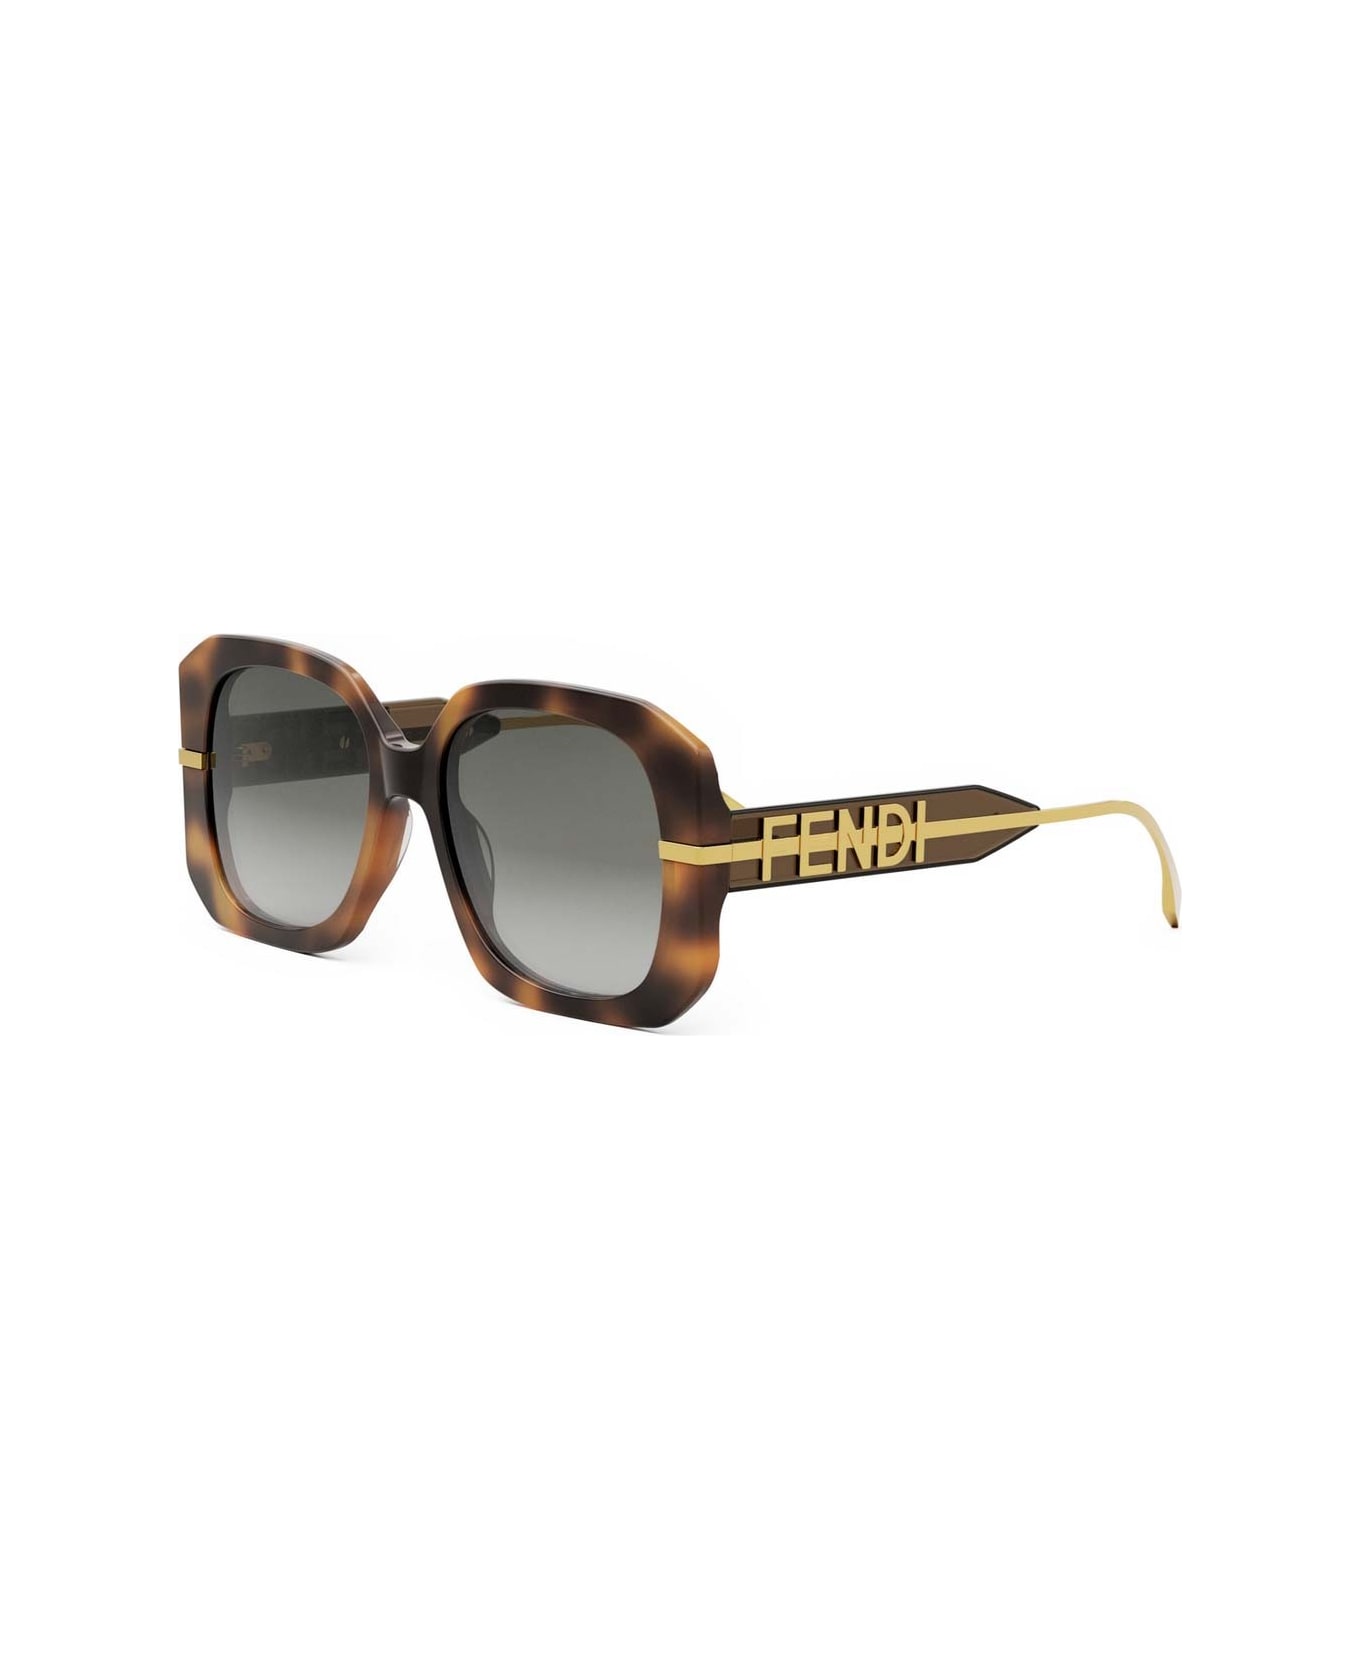 Fendi Eyewear Sunglasses - Havana/Grigio sfumato サングラス